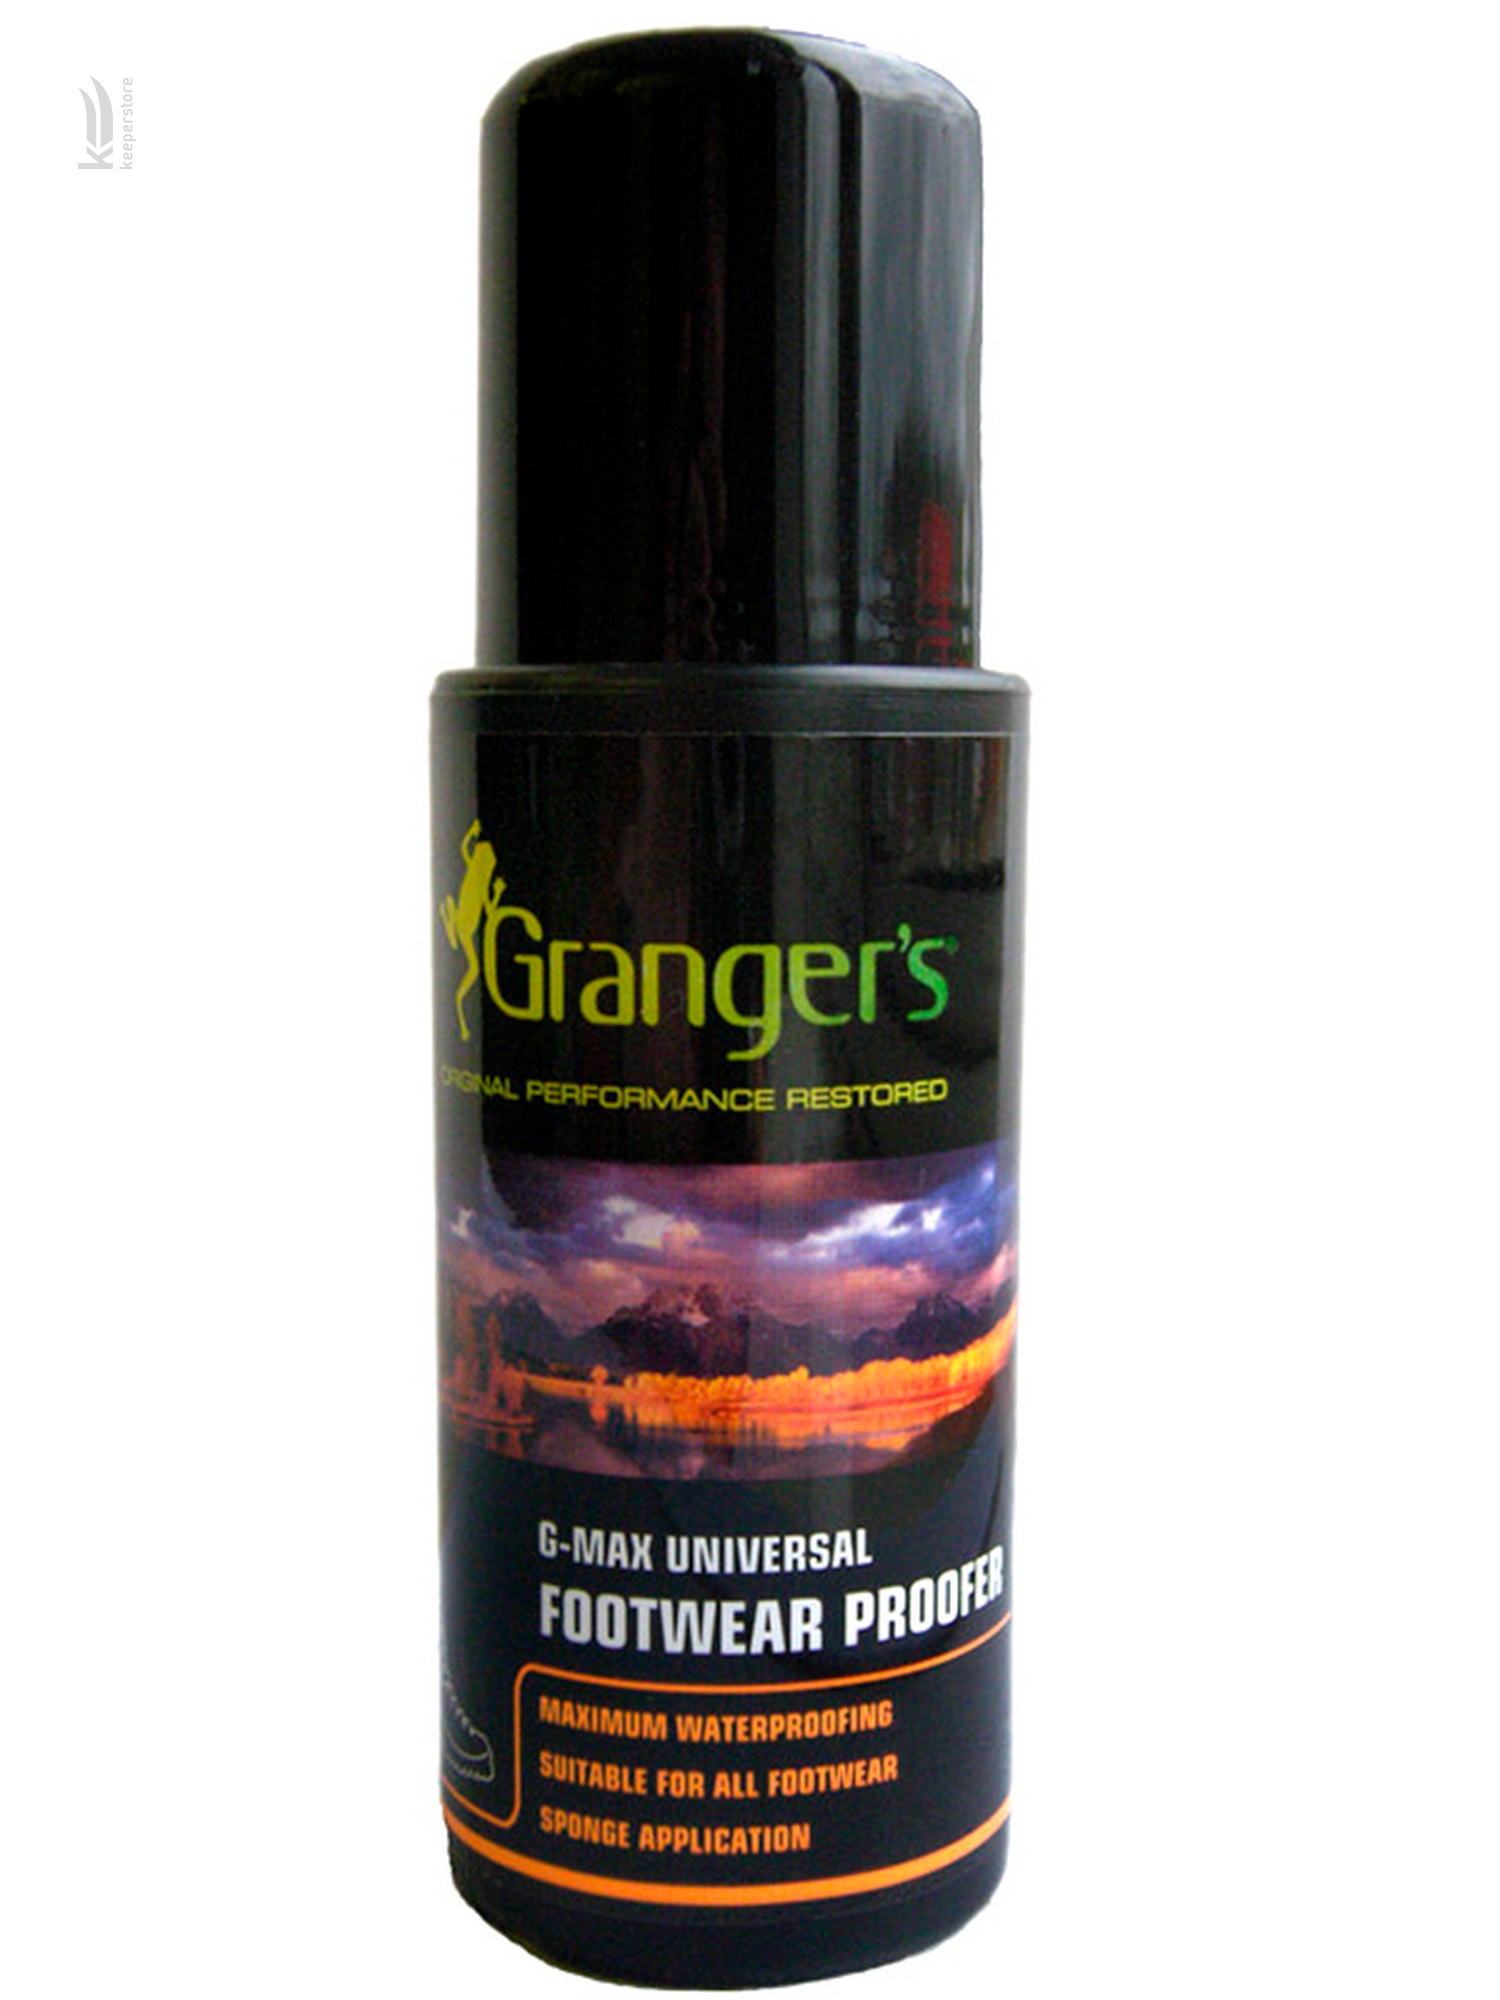 Аэрозоль для пропитки и восстановления влагоотталкивающих свойств обуви Granger's G-Max Universal Footwear Proofer 100 ml